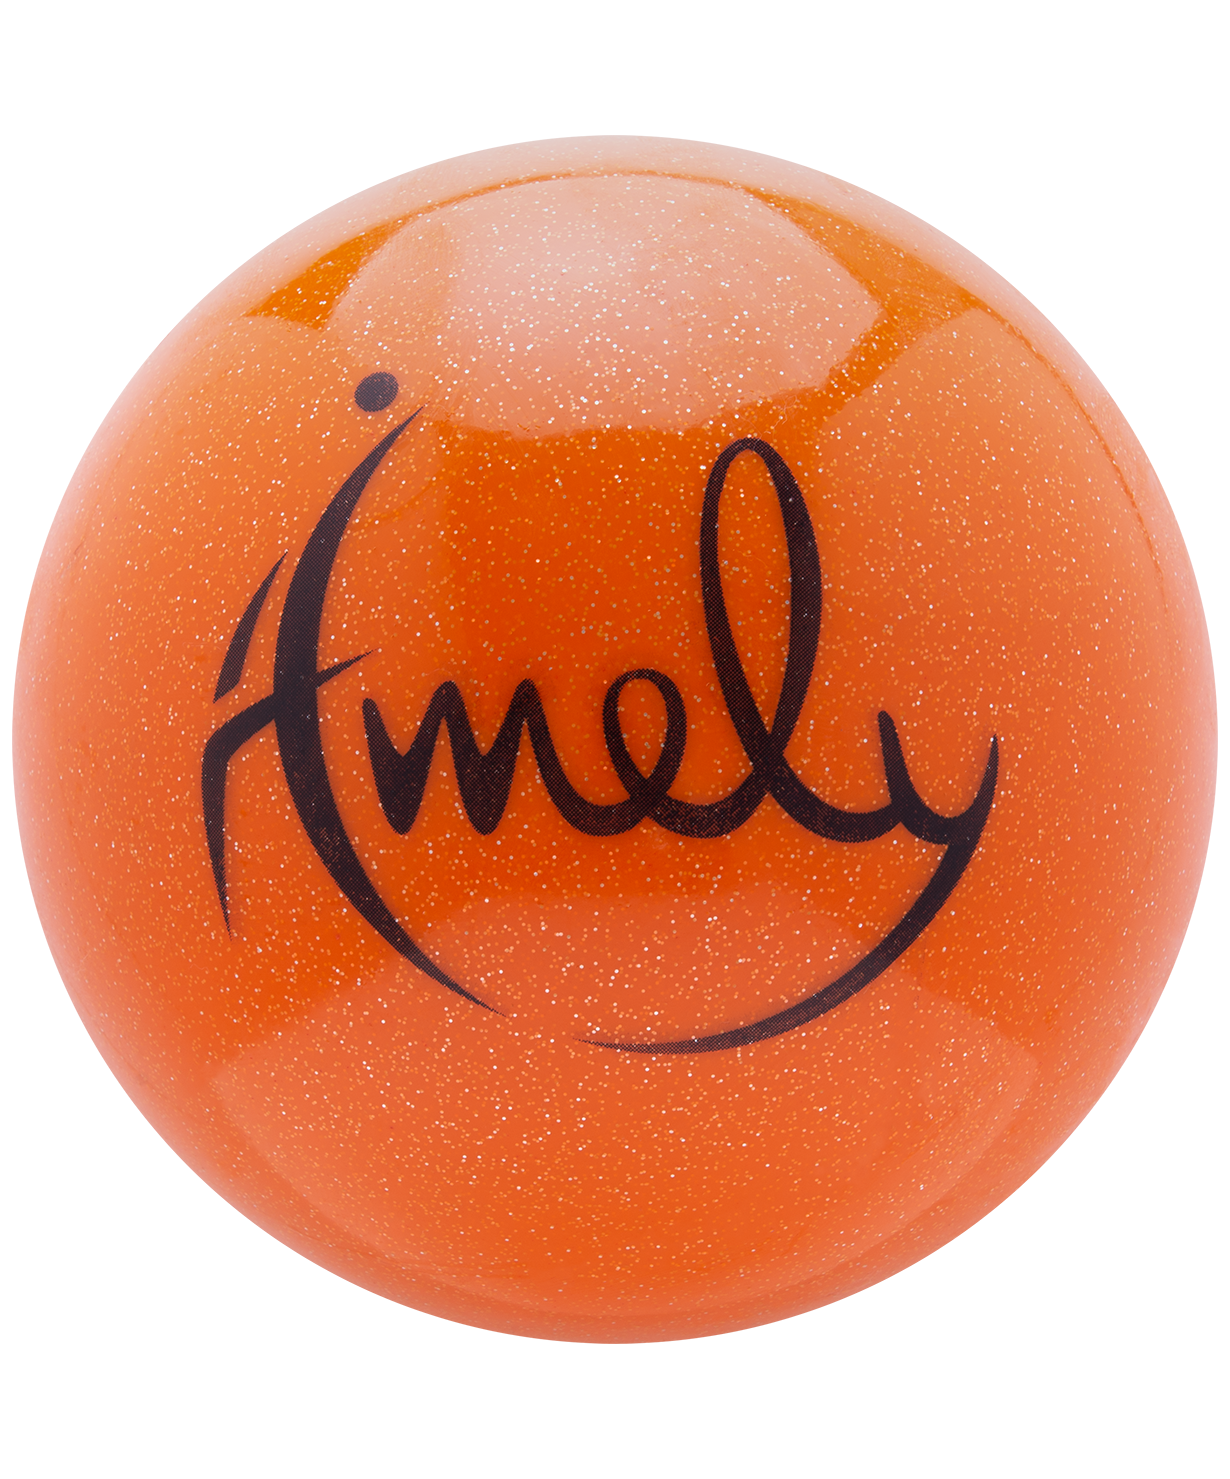 фото Amely мяч для художественной гимнастики agb-303 15 см; оранжевый; с насыщенными блестками